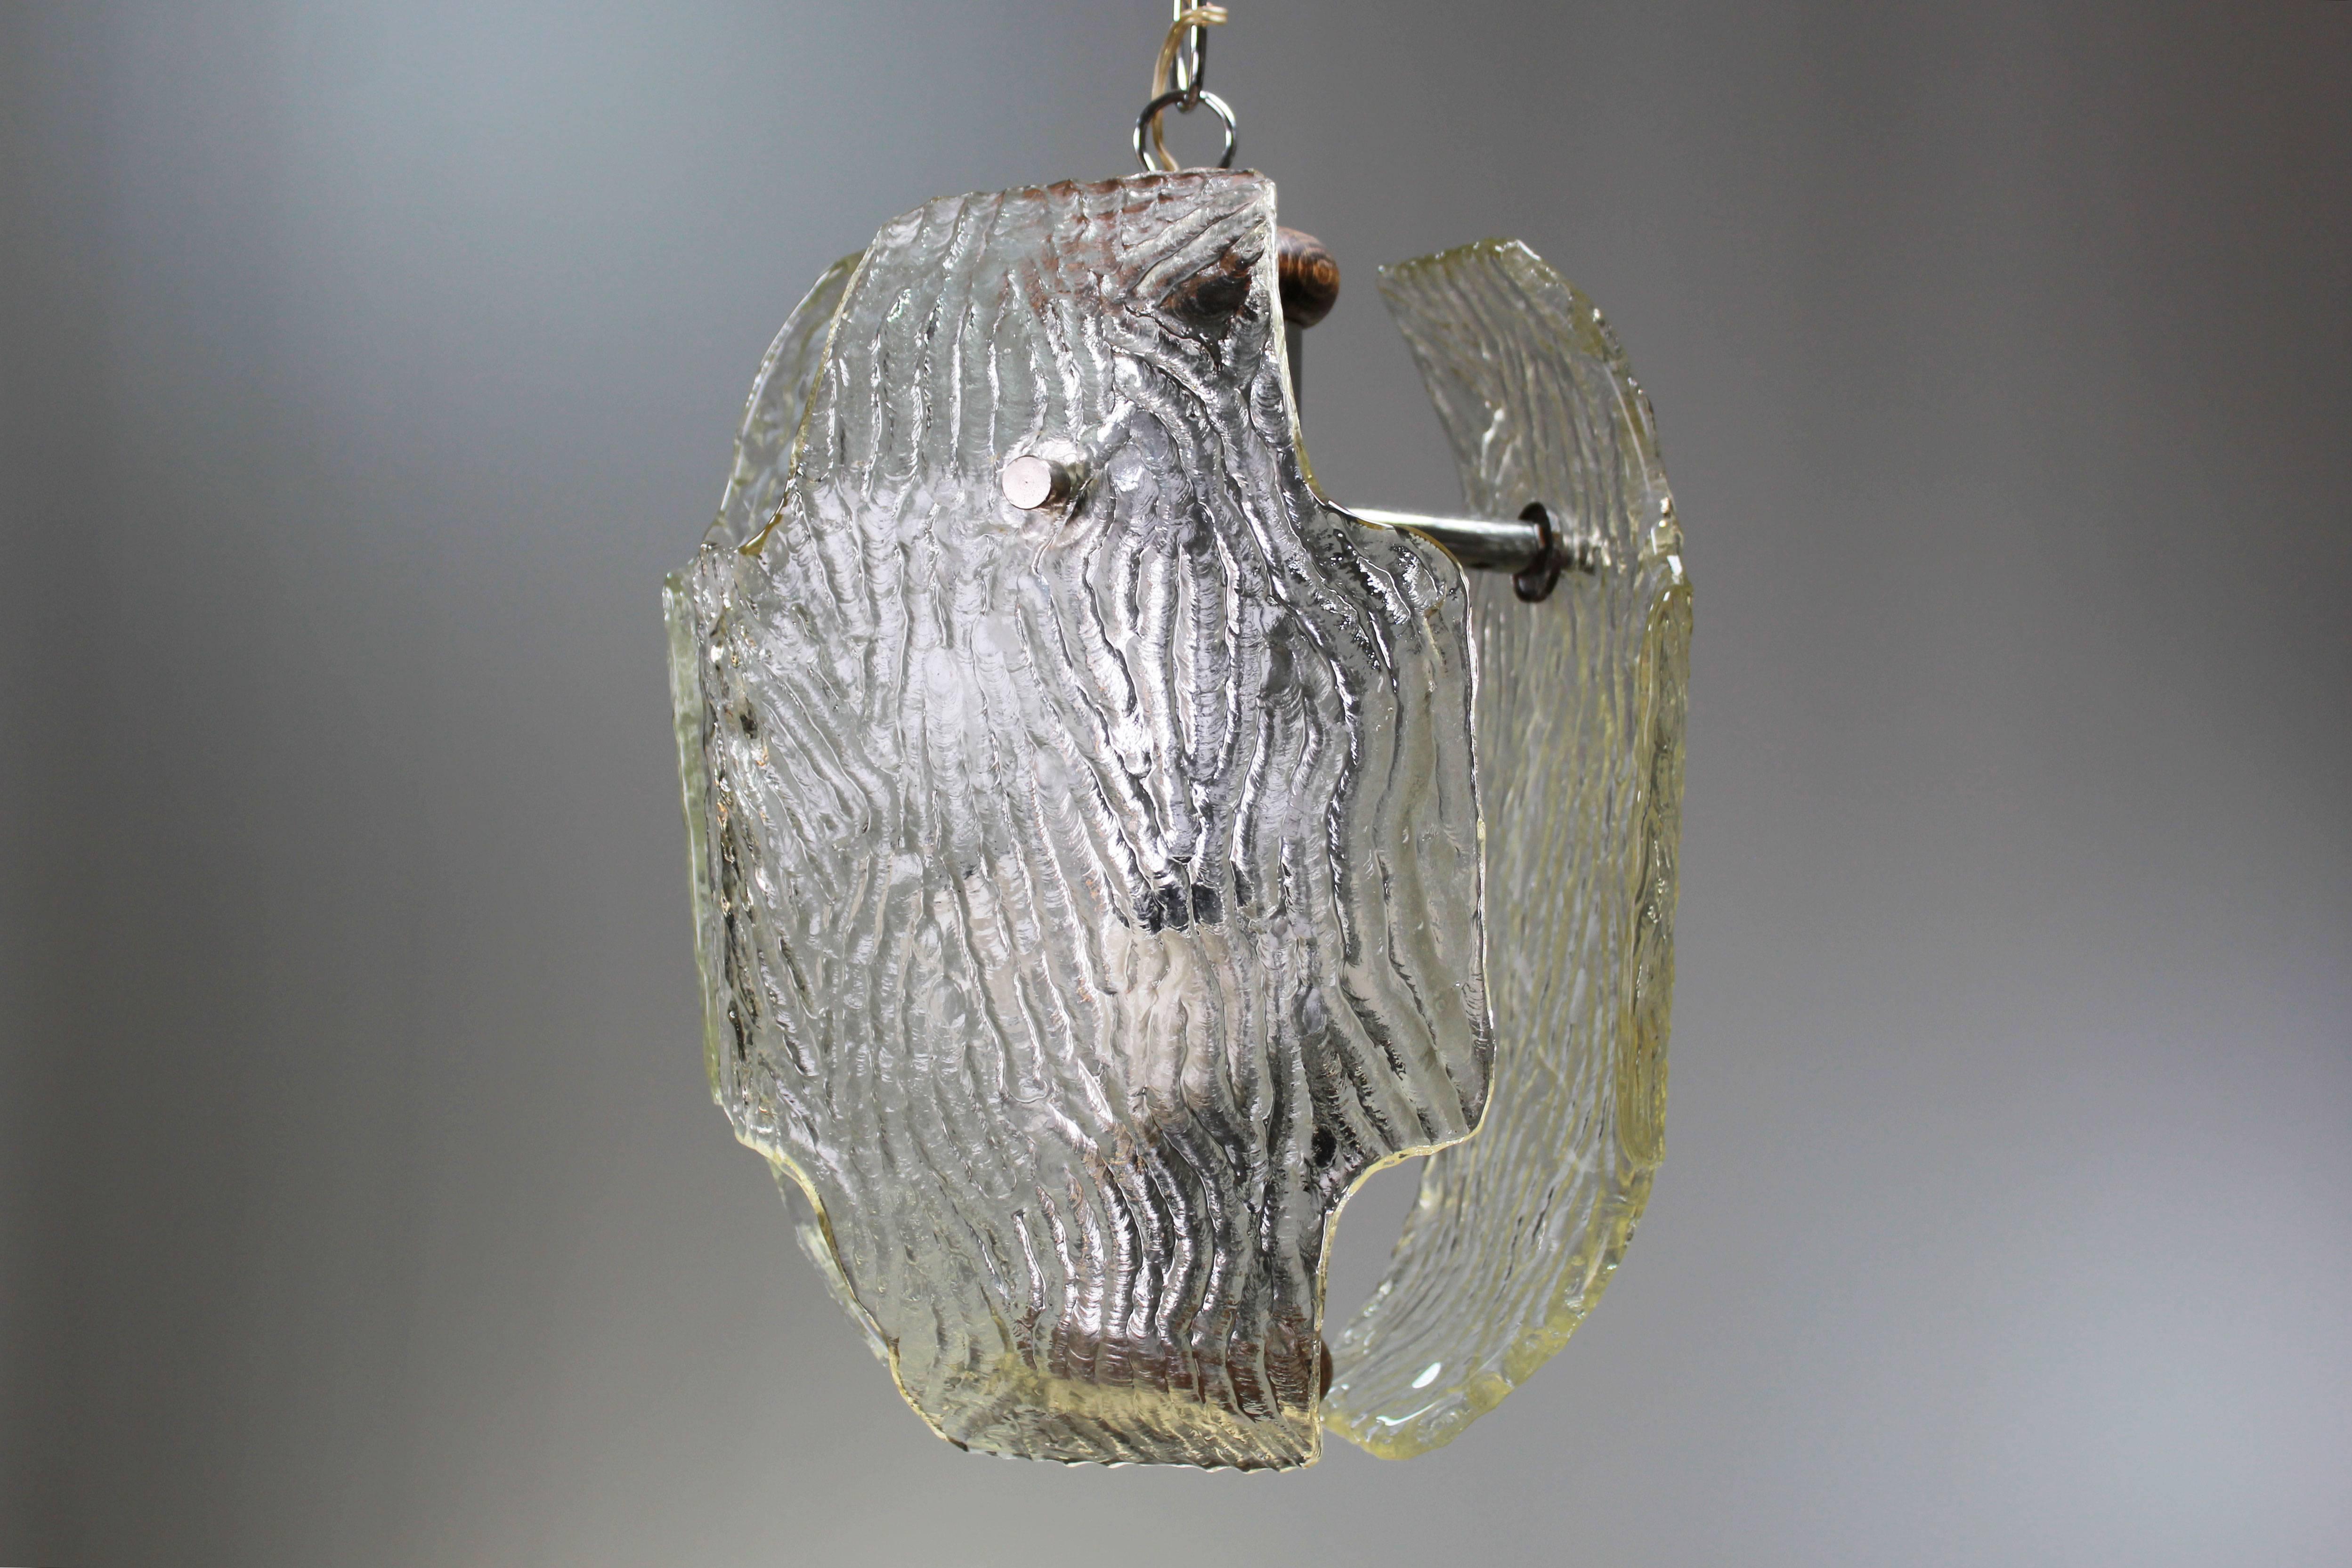 Suspension italienne Murano du milieu du siècle avec trois grandes plaques de verre transparent texturé et quincaillerie en métal. Chaîne en métal brillant d'origine et dessus et dessous en bois. Fabriqué sur l'île vénitienne de Murano dans les